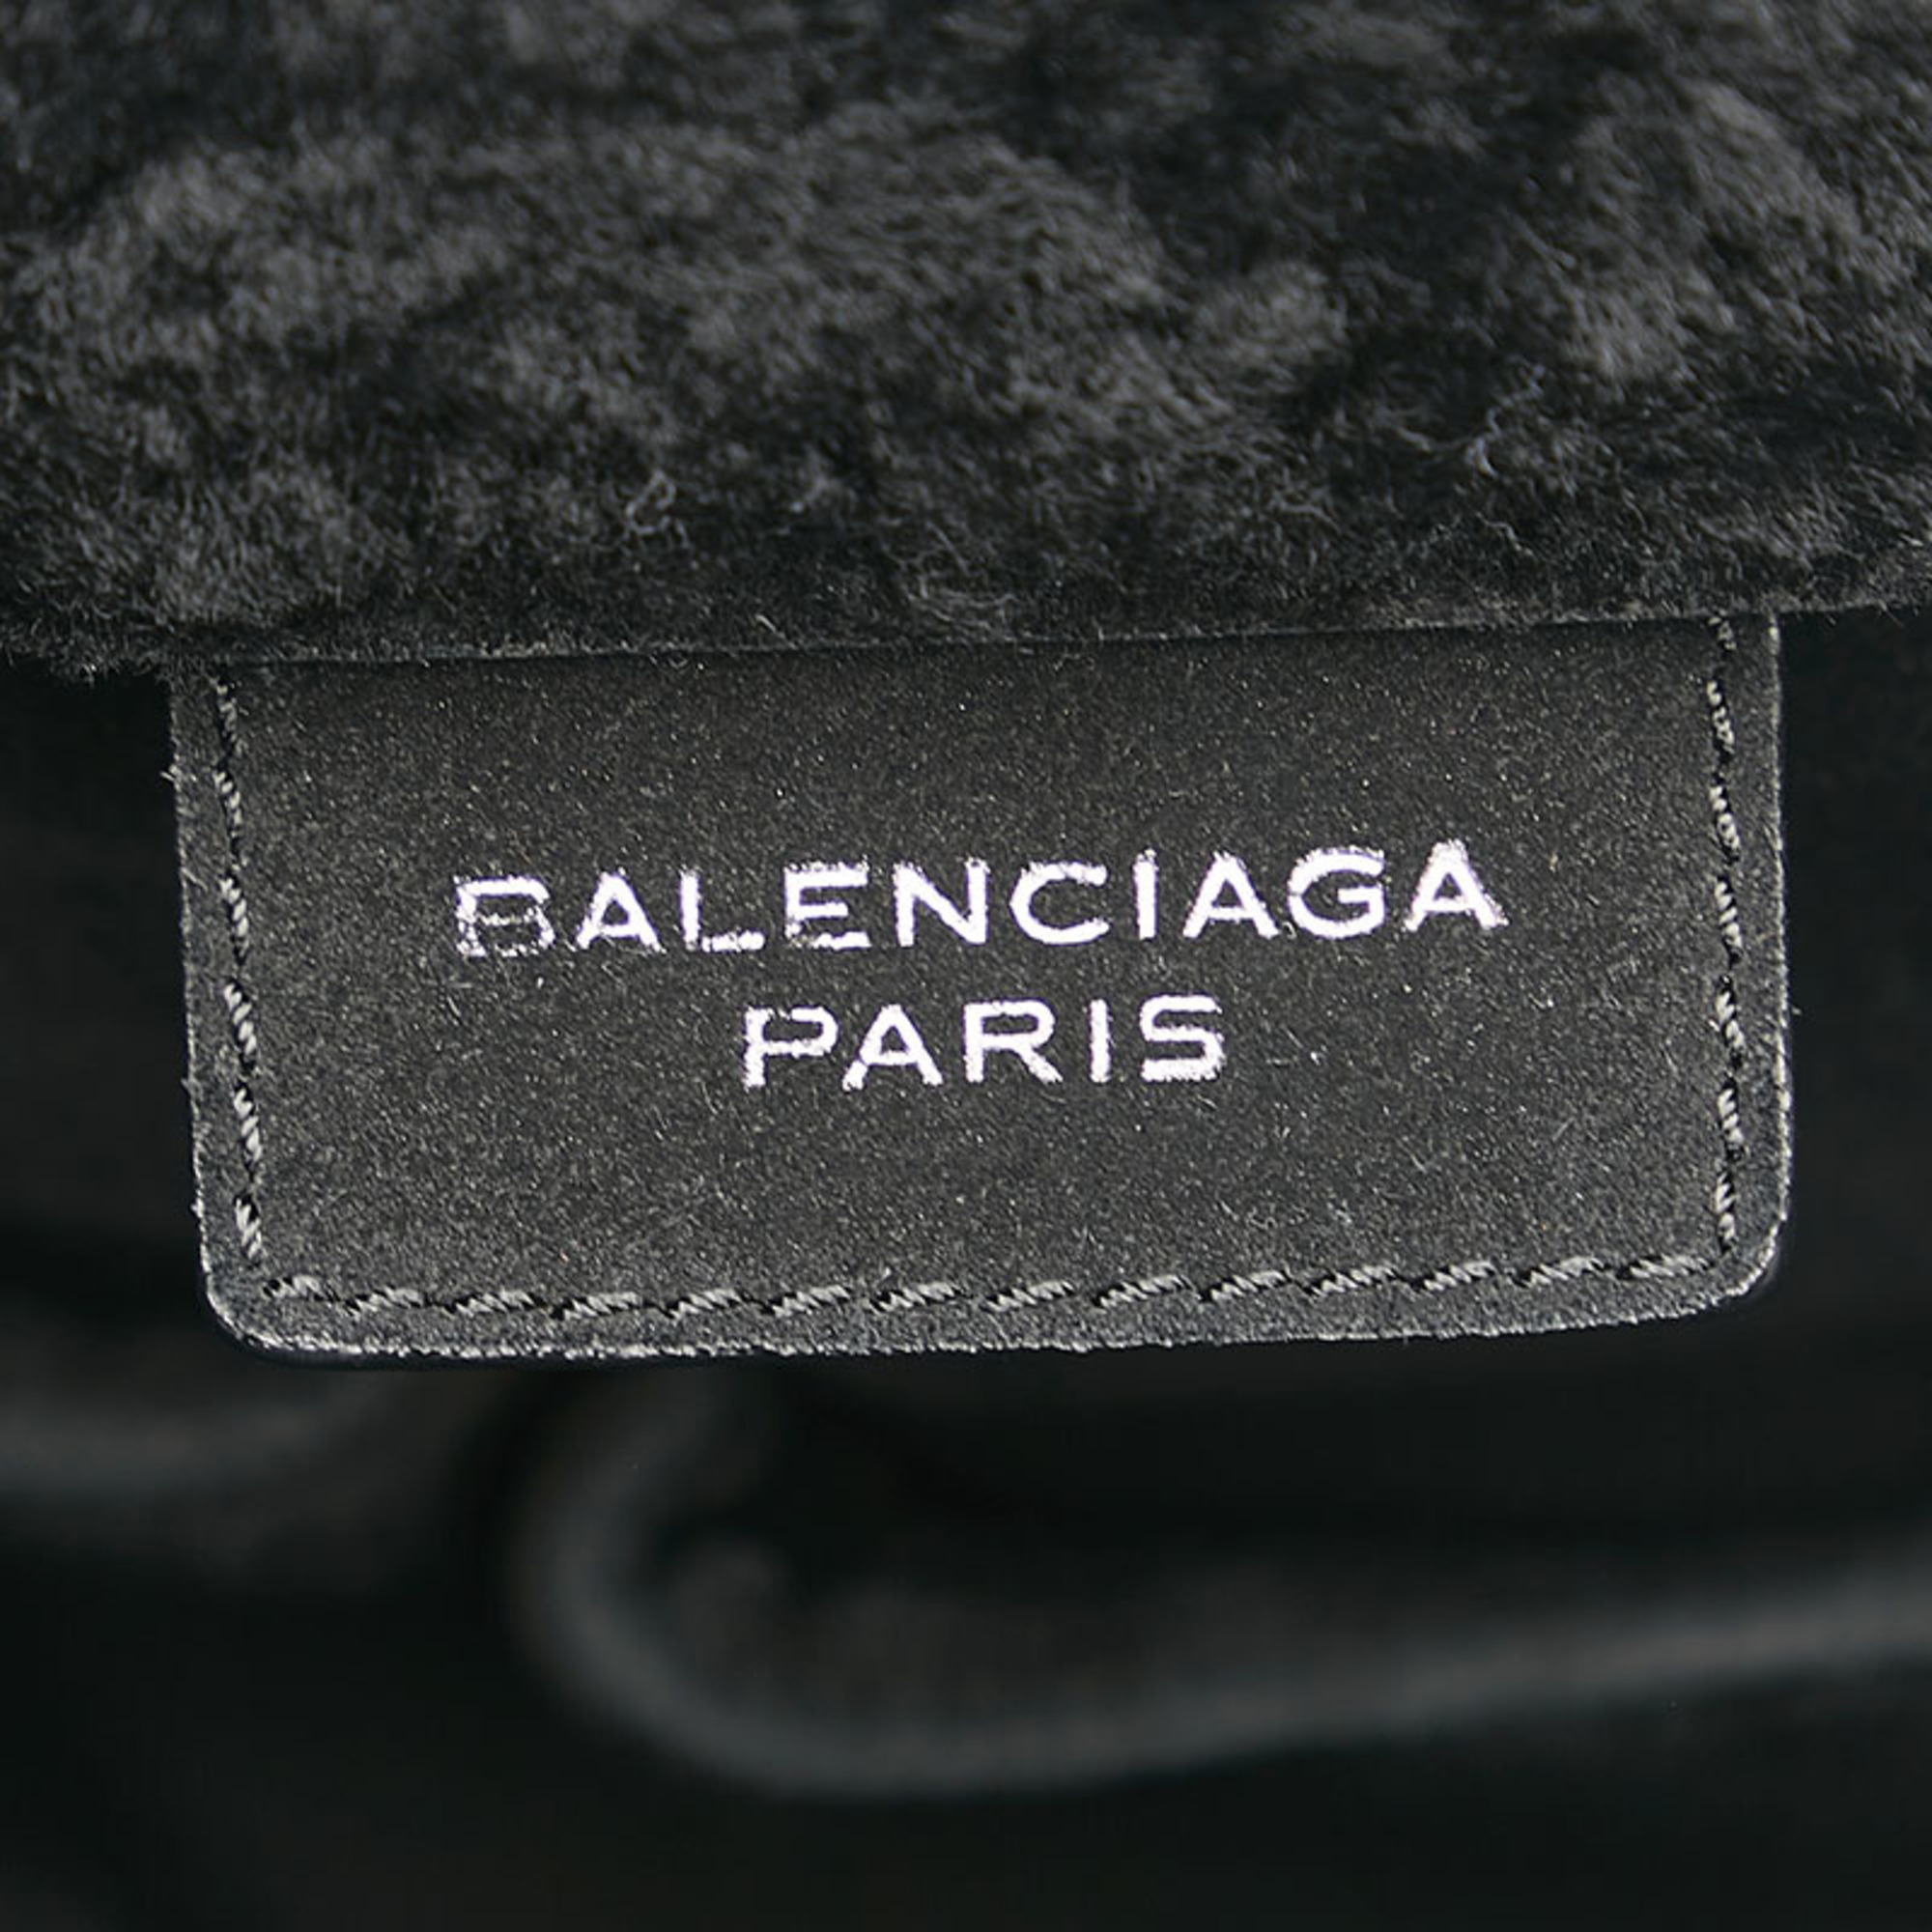 Balenciaga mouton handbag tote bag black leather ladies BALENCIAGA